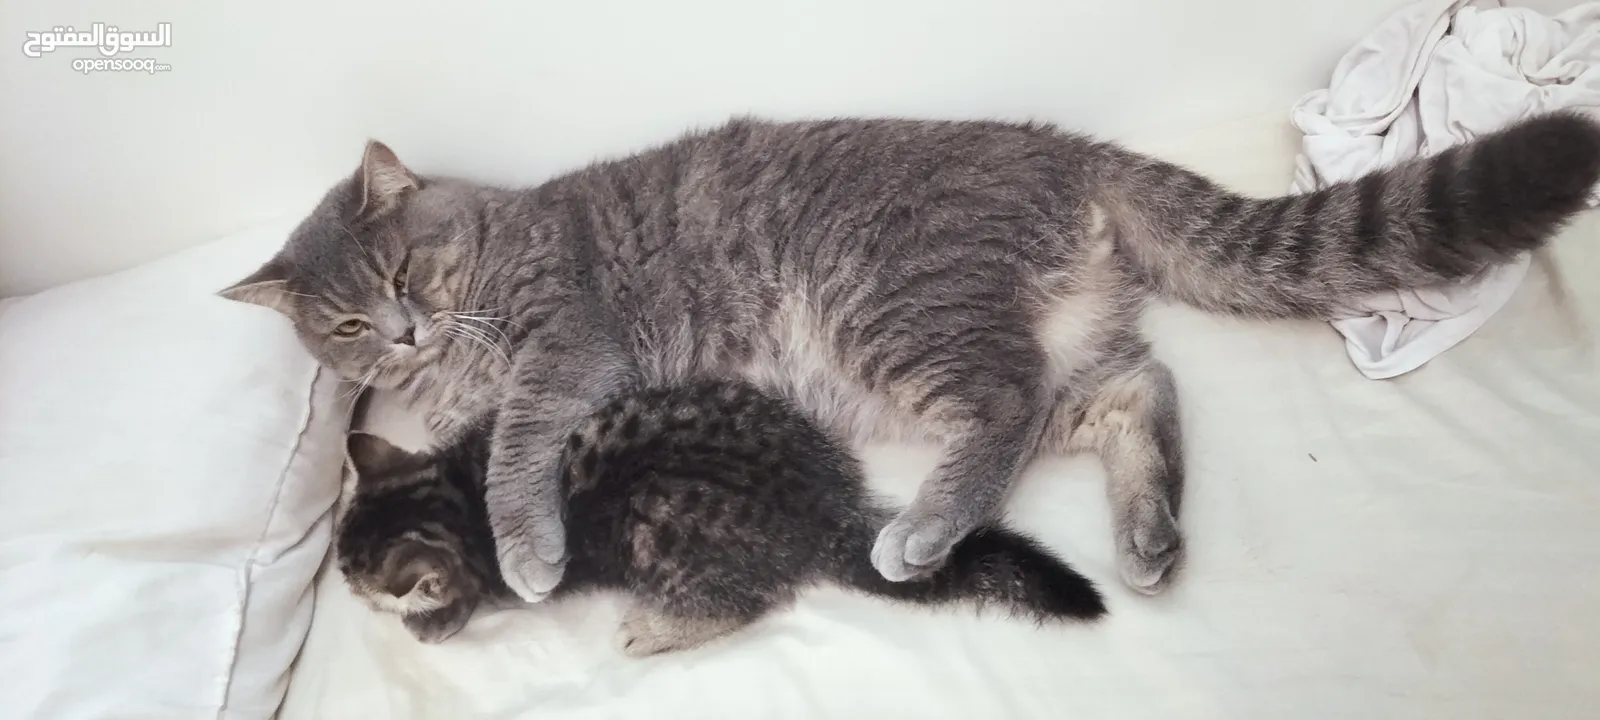 cat & kitten